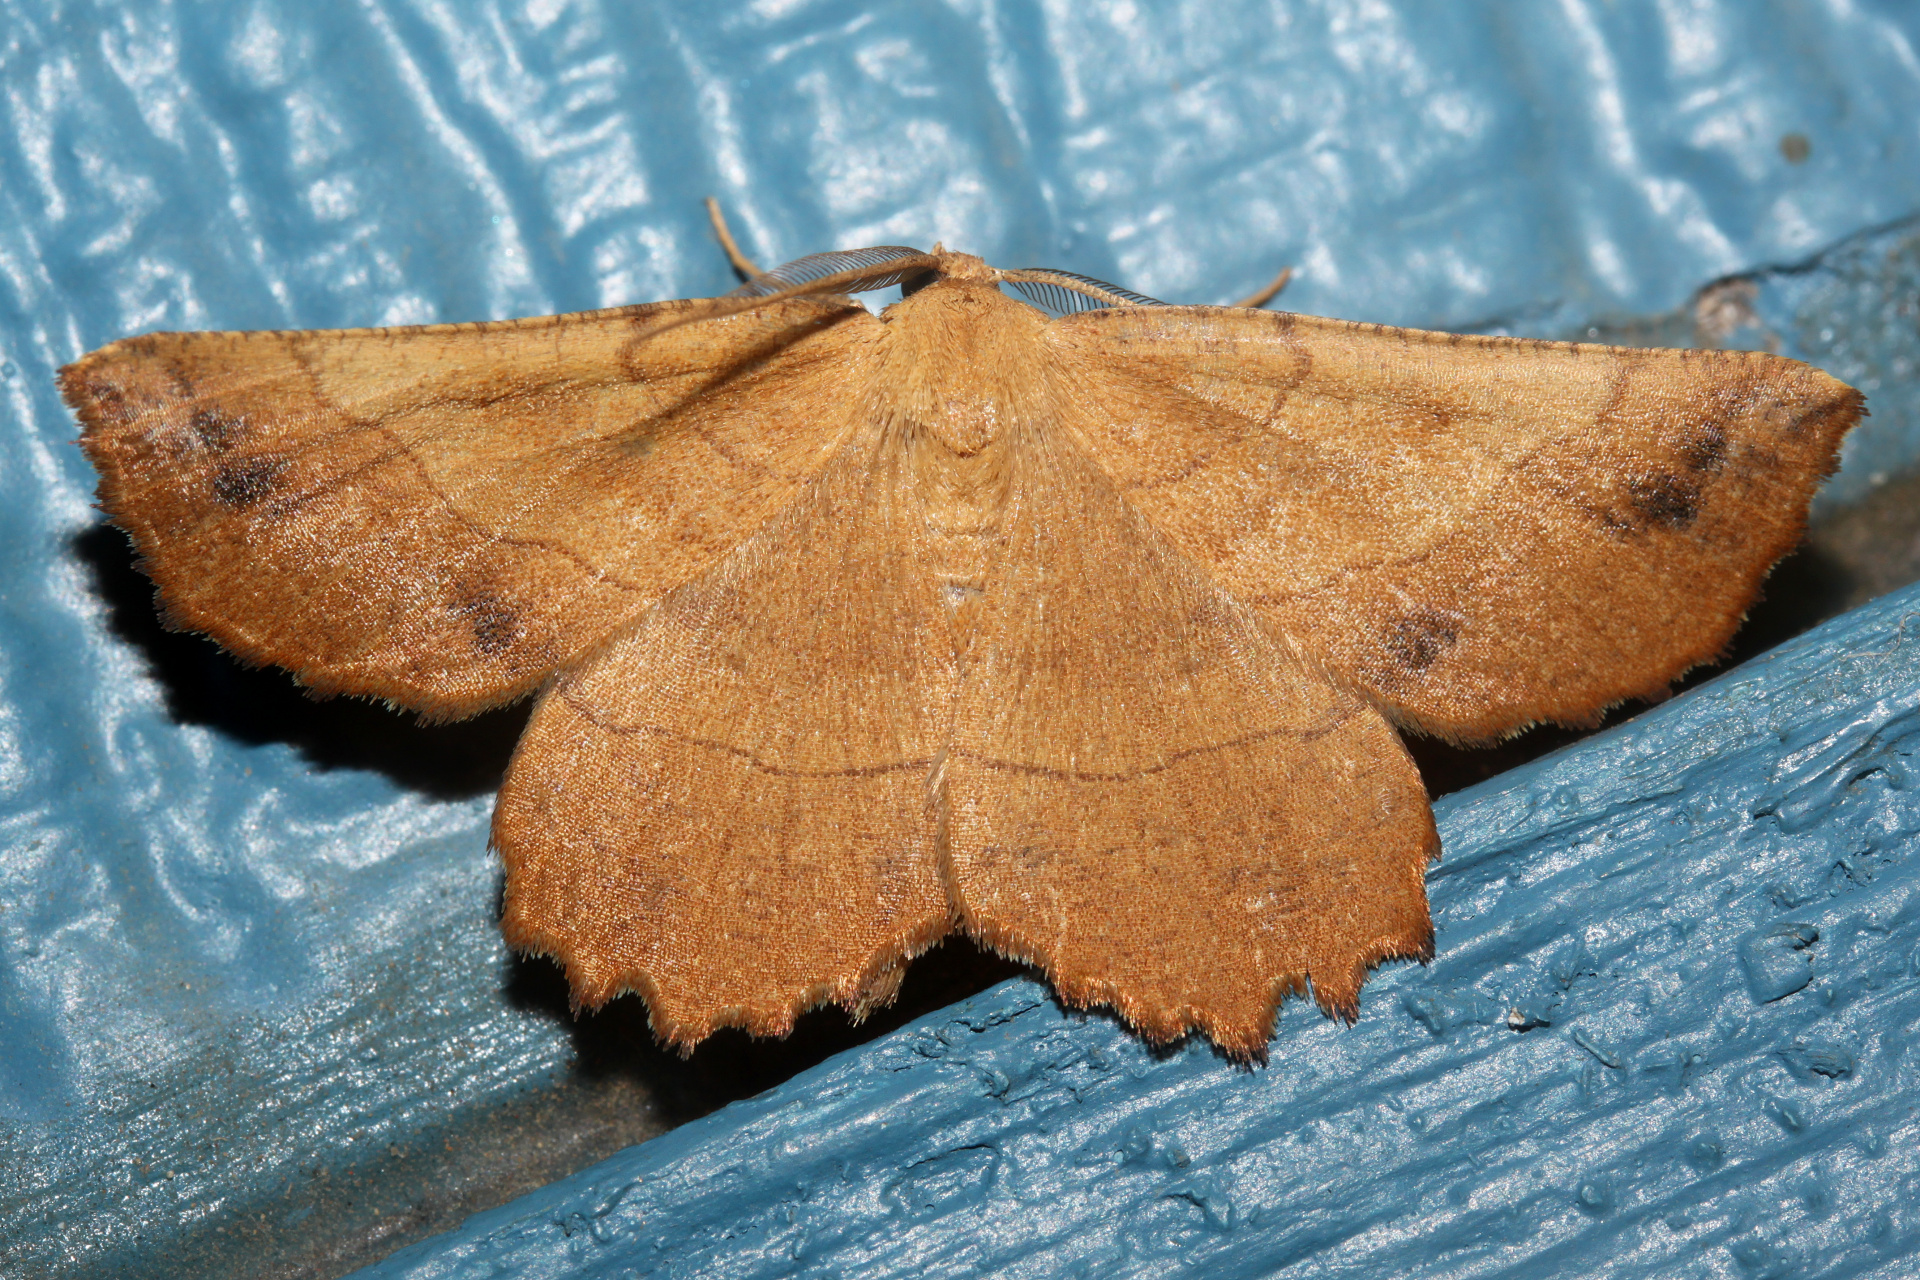 Euchlaena johnsonaria (Podróże » USA: Drogi nie obrane » Zwierzęta » Owady » Motyle i ćmy » Geometridae)